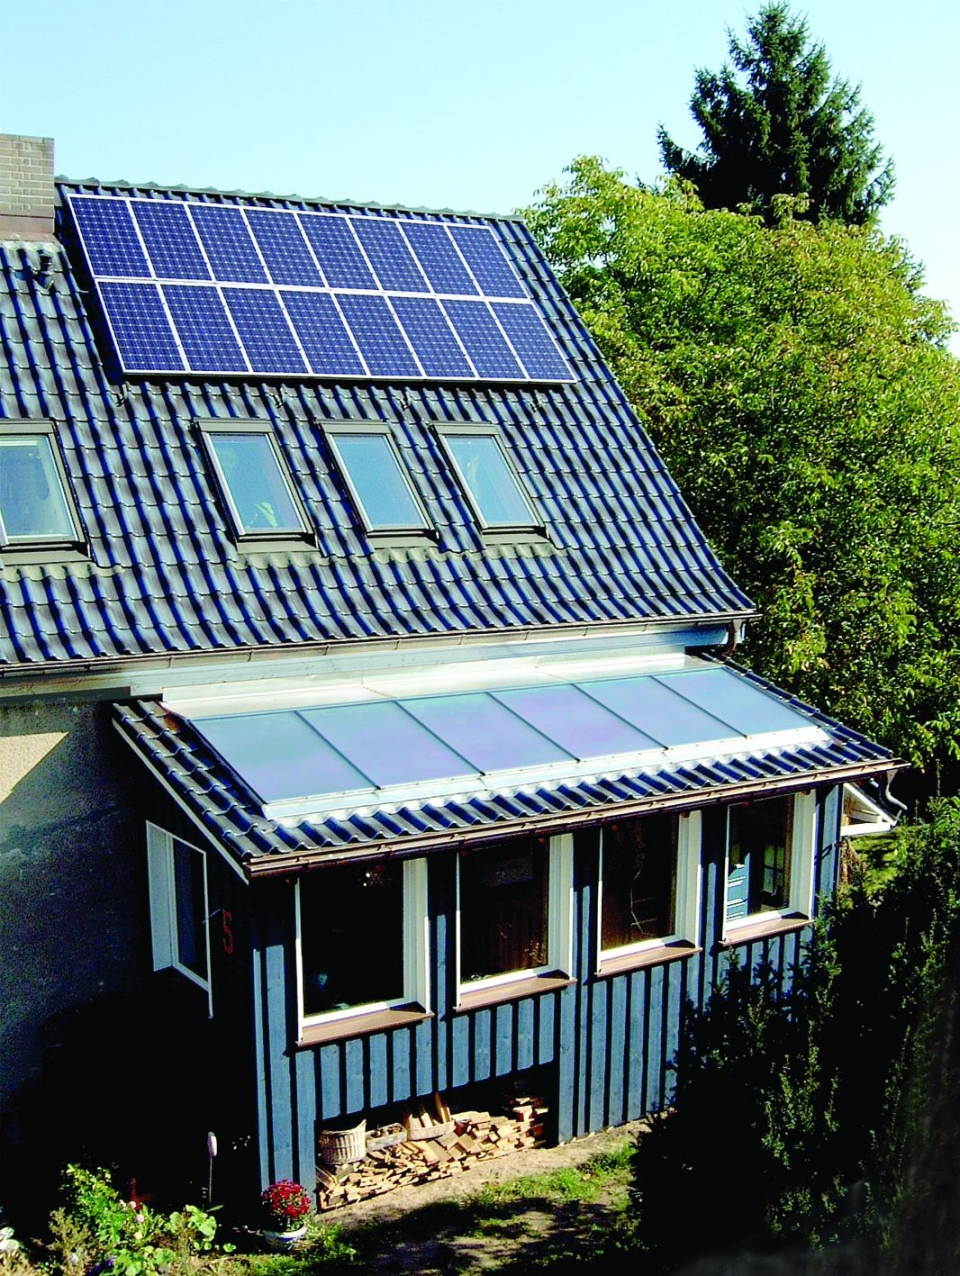 Bild eines Hauses in der Natur mit Solarkollektoren